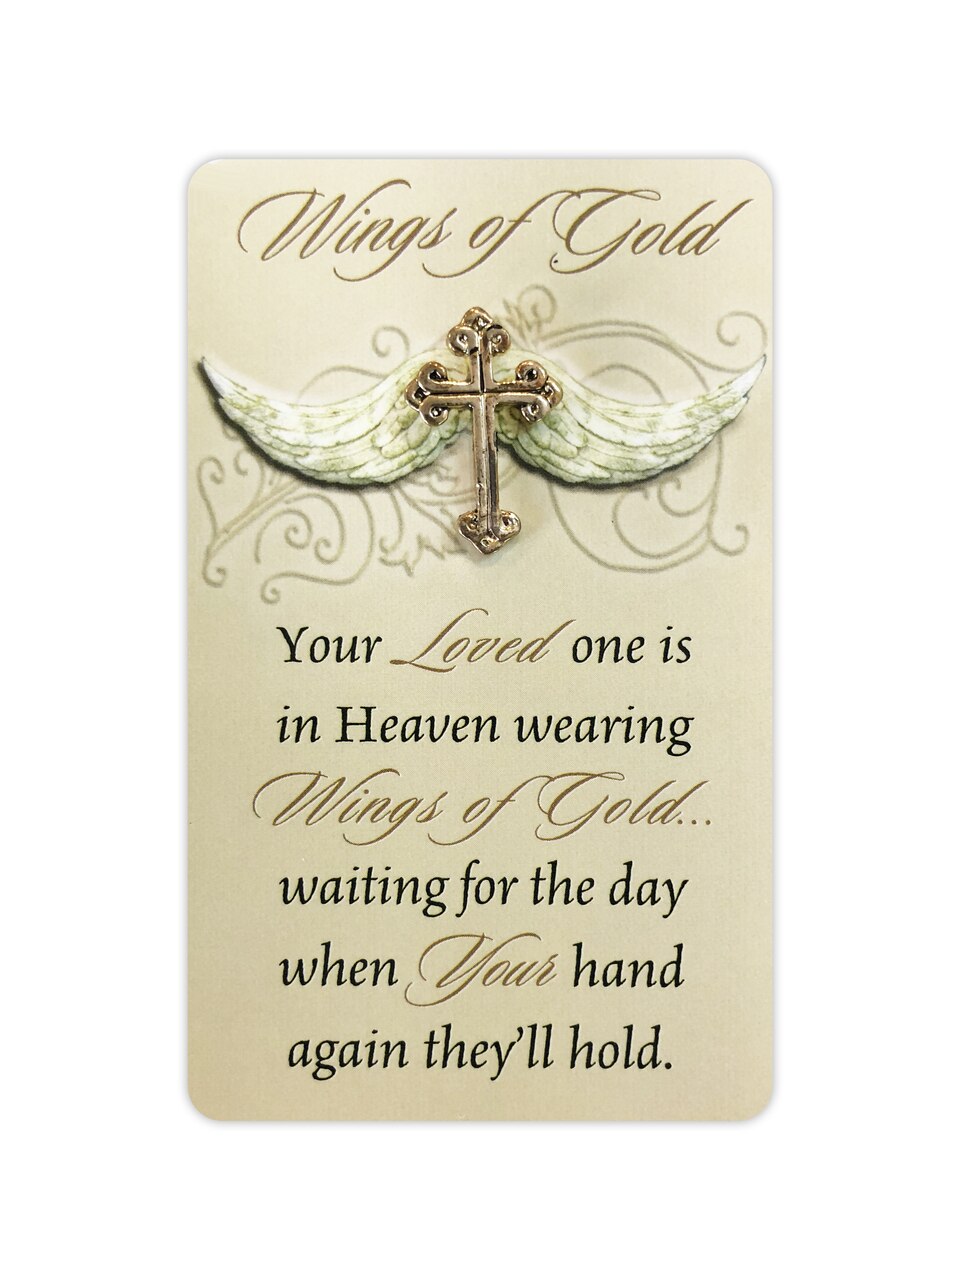 Wings of Gold Lapel Memorial Pin with Memorial Poem Card.